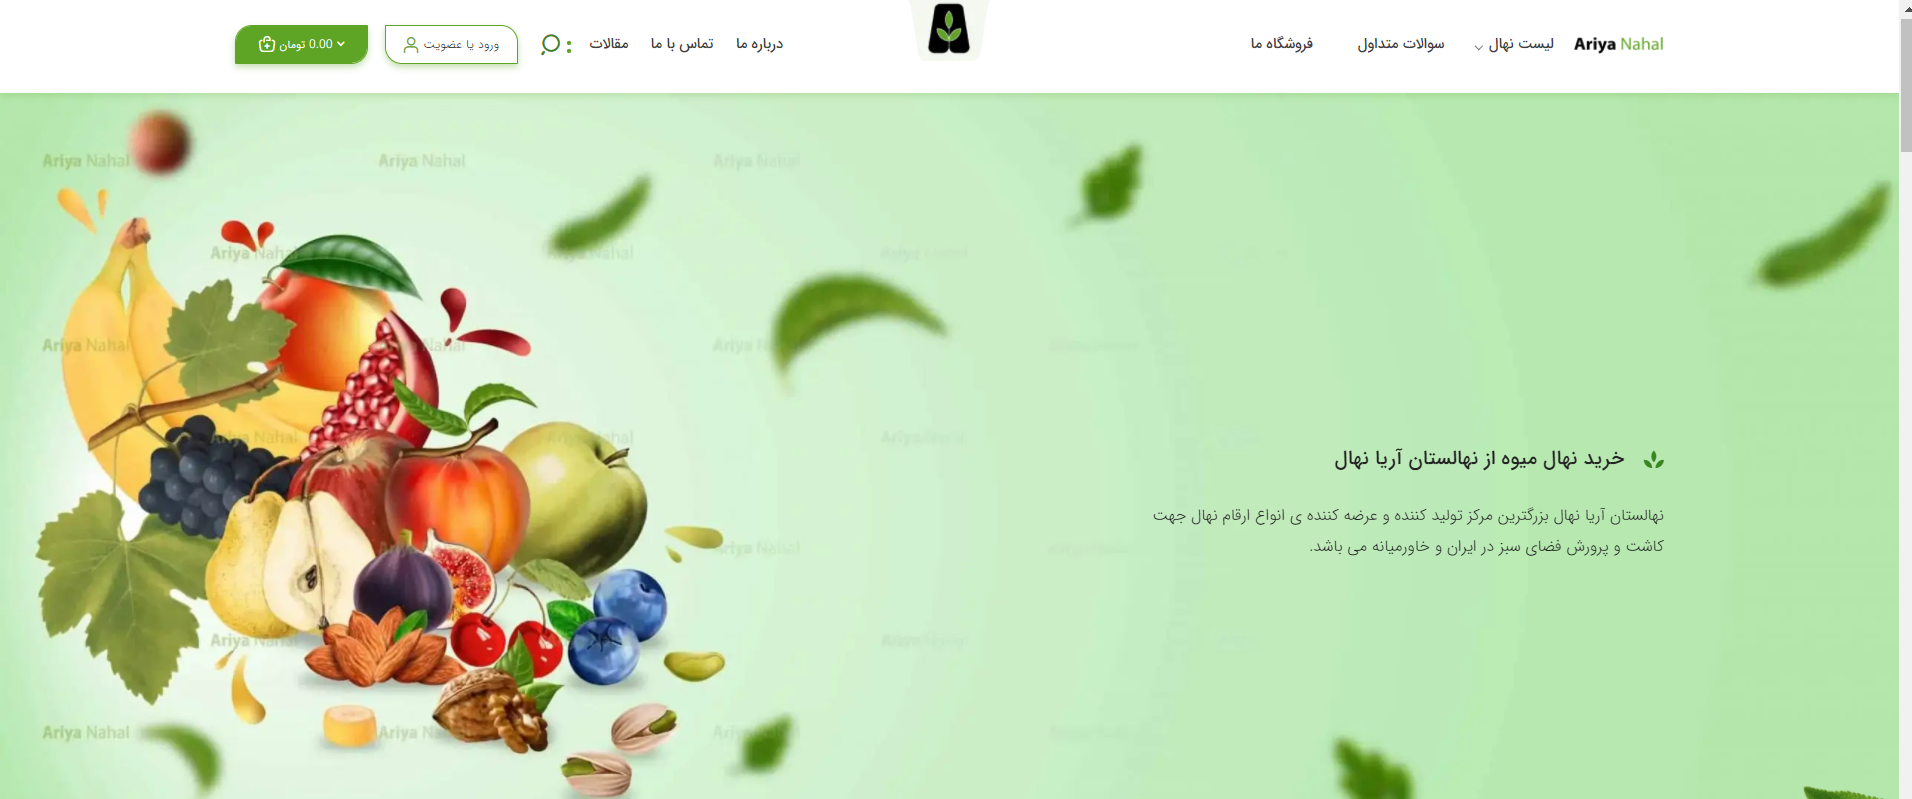 آریا نهال از سایت جدیدش رو نمایی کرد: